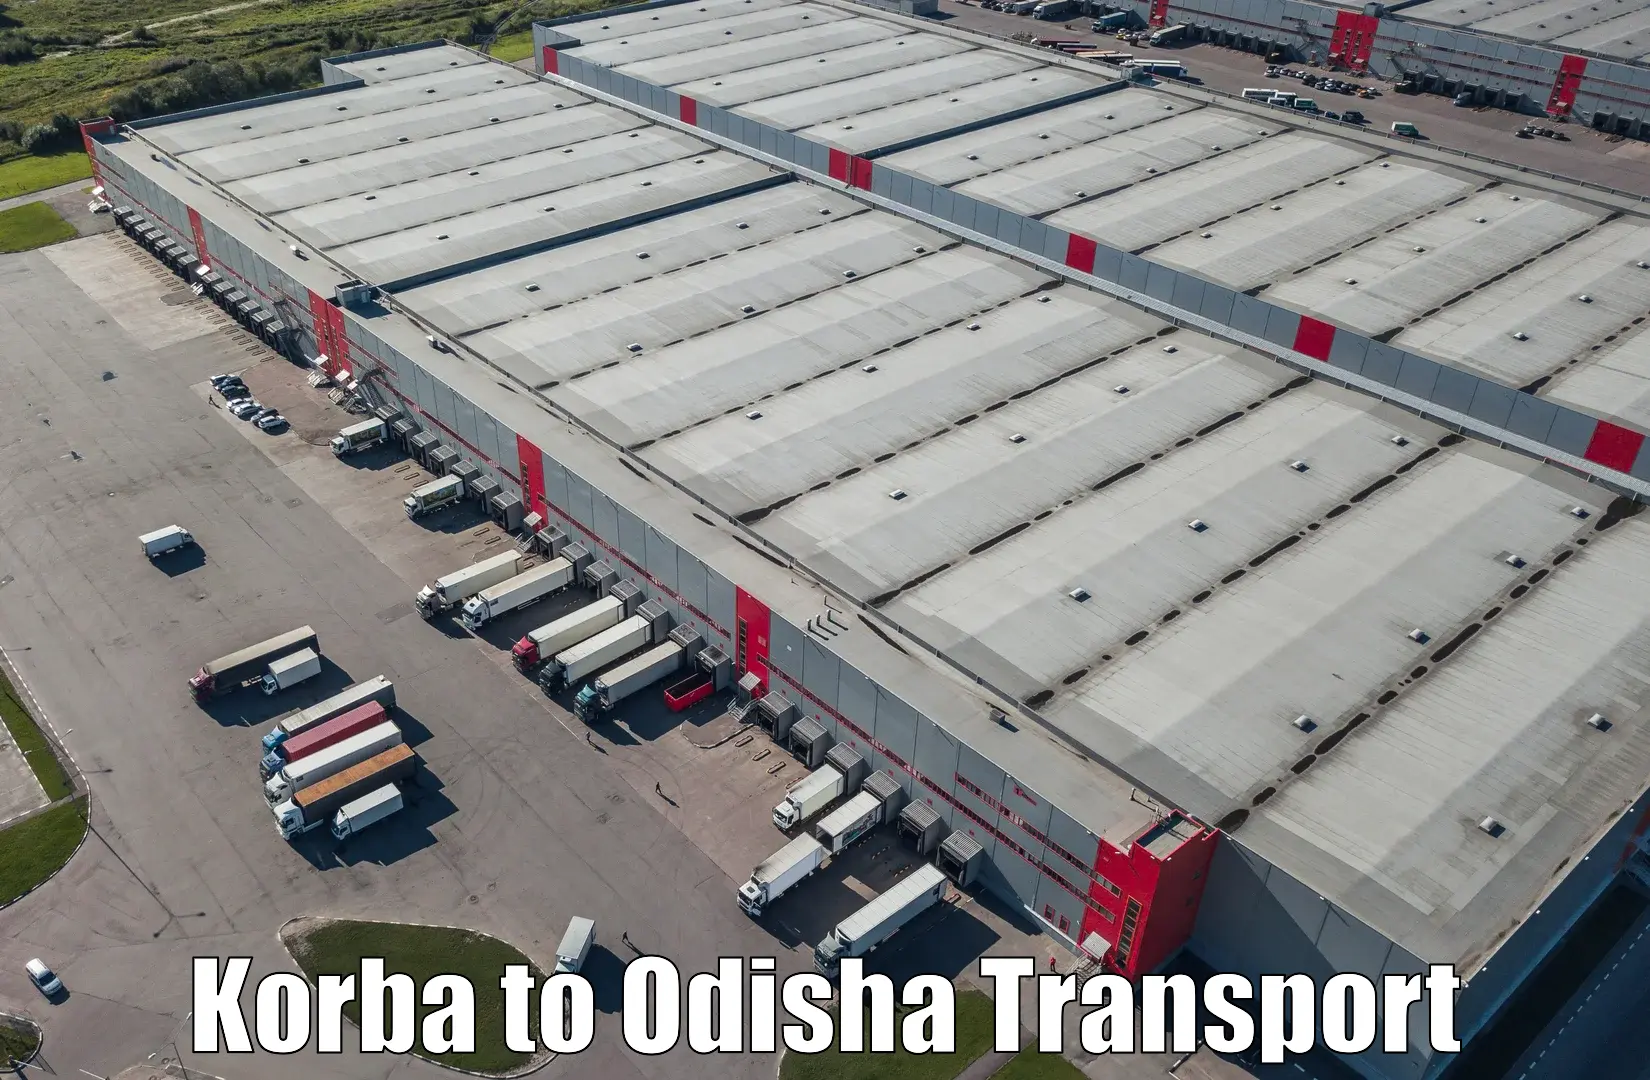 India truck logistics services Korba to Mahakalapada